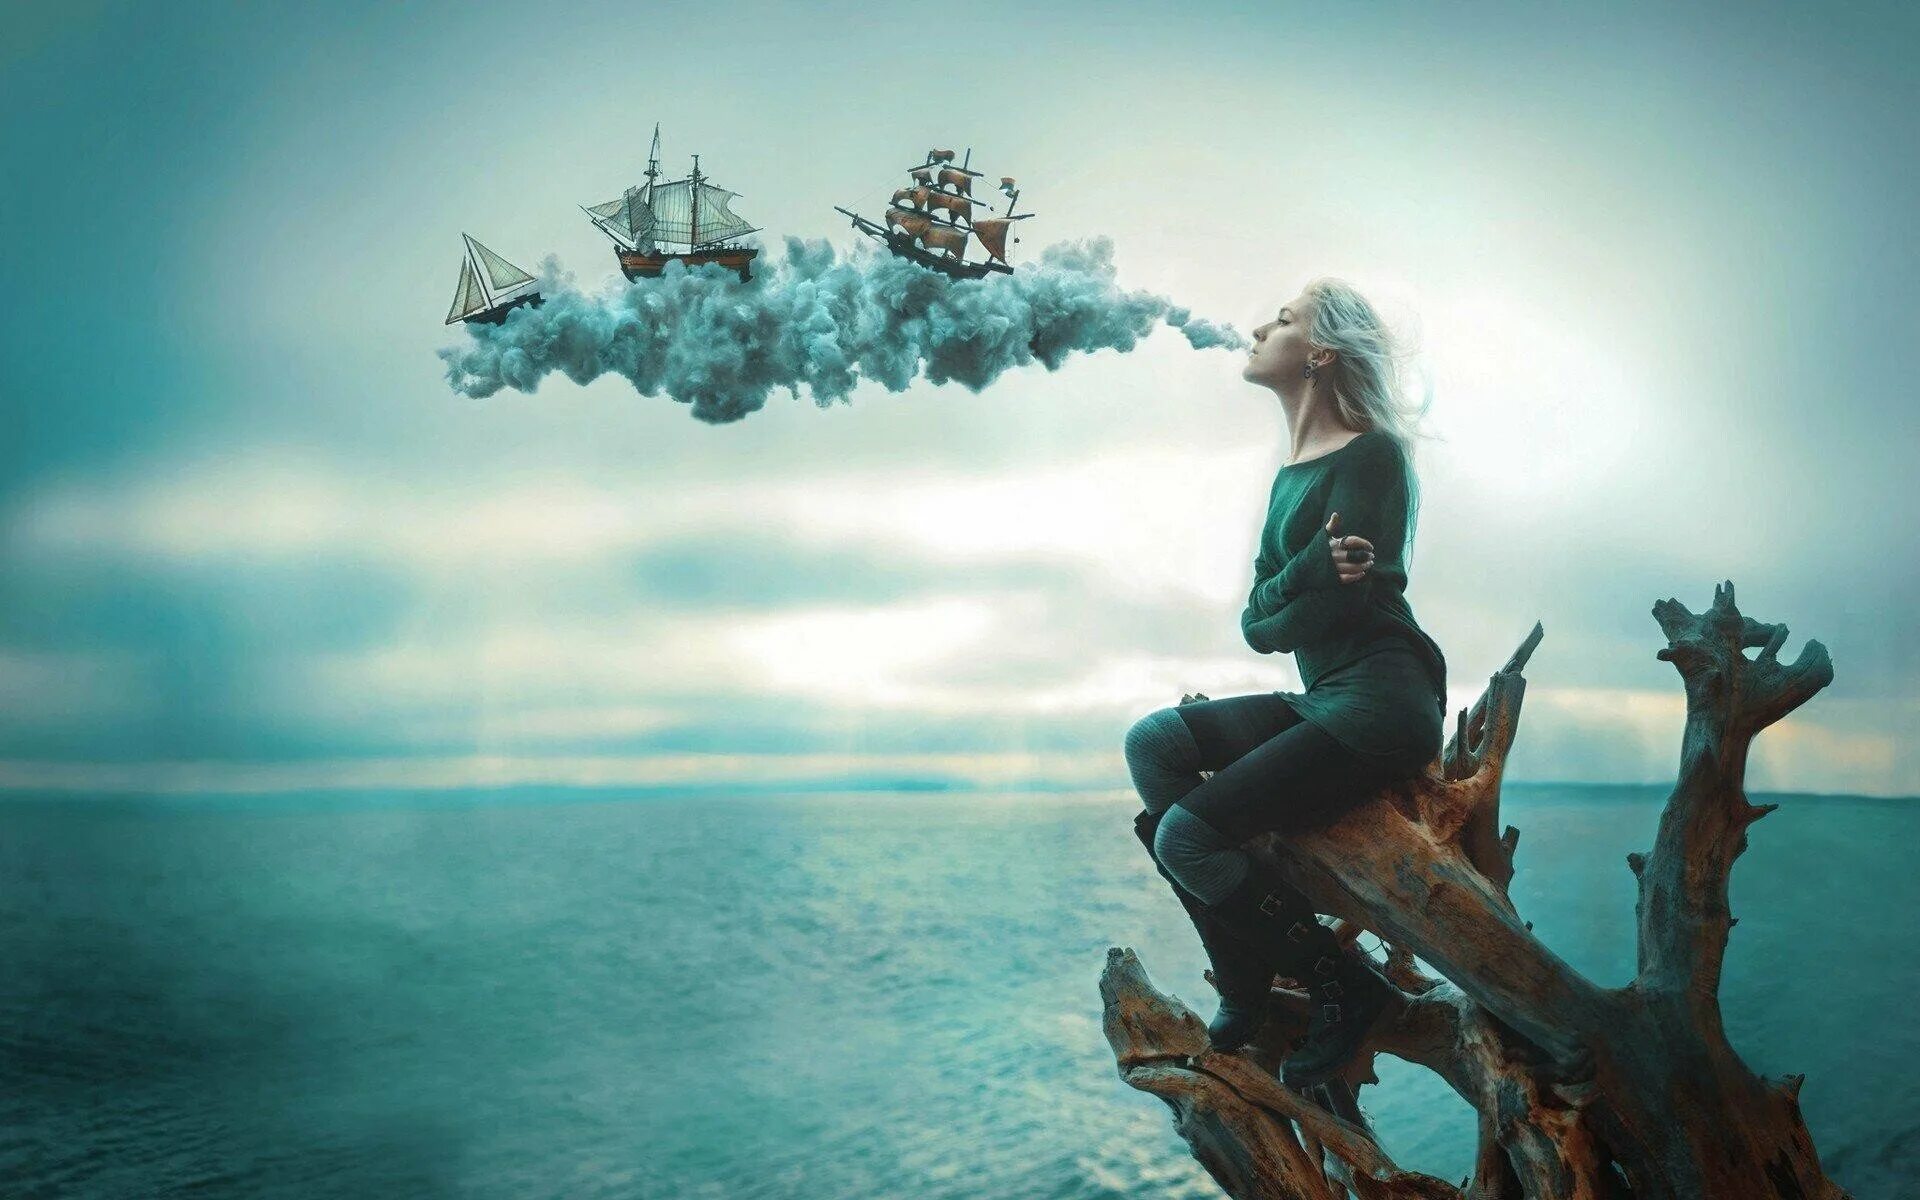 Стоять заколдованно. Девушка на корабле. Девушка-море. Фотосессия в стиле фантастика. Фантастическое море.